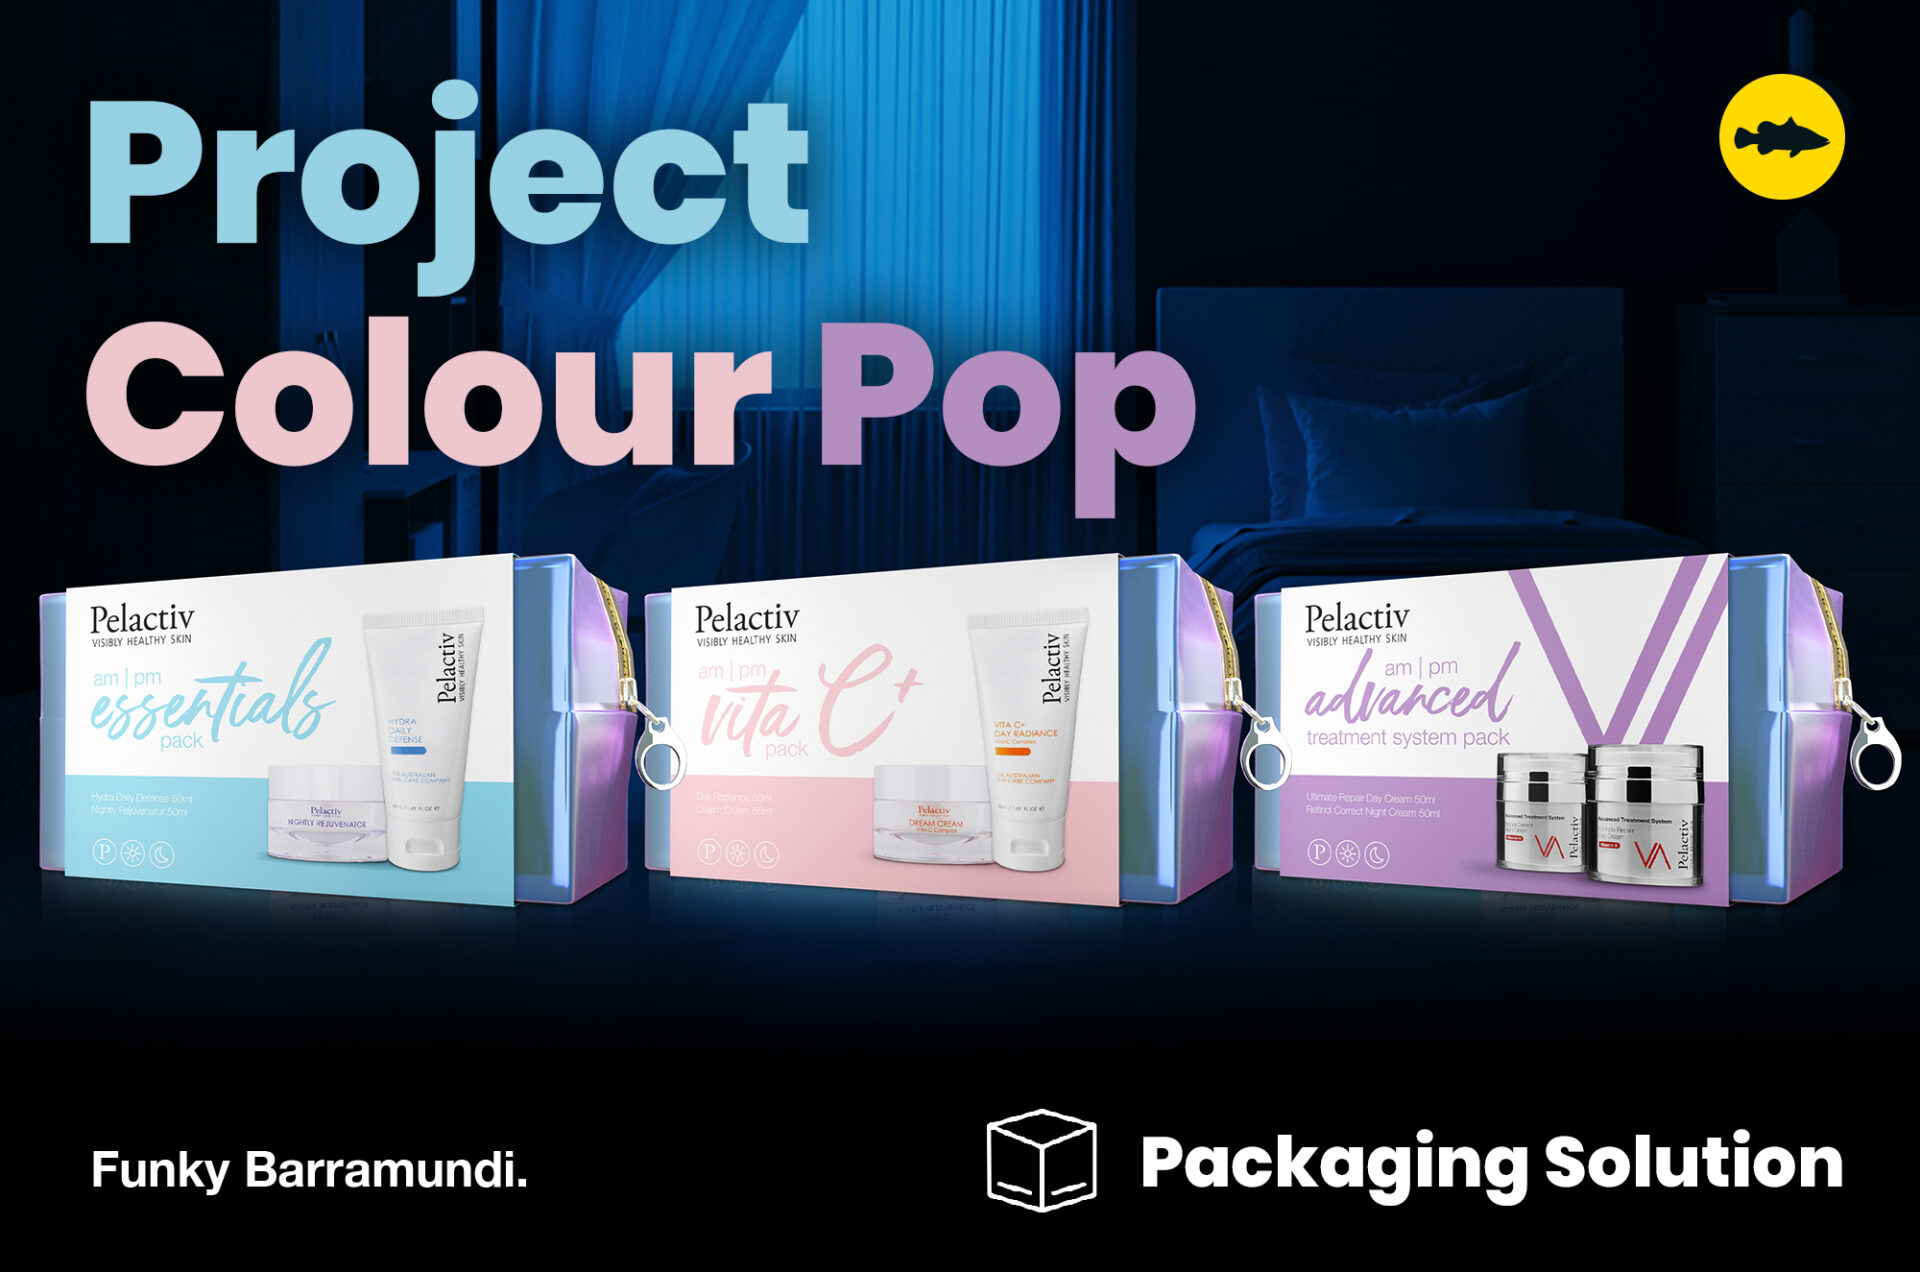 Project Colour Pop: New Pelactiv AM / FM packaging